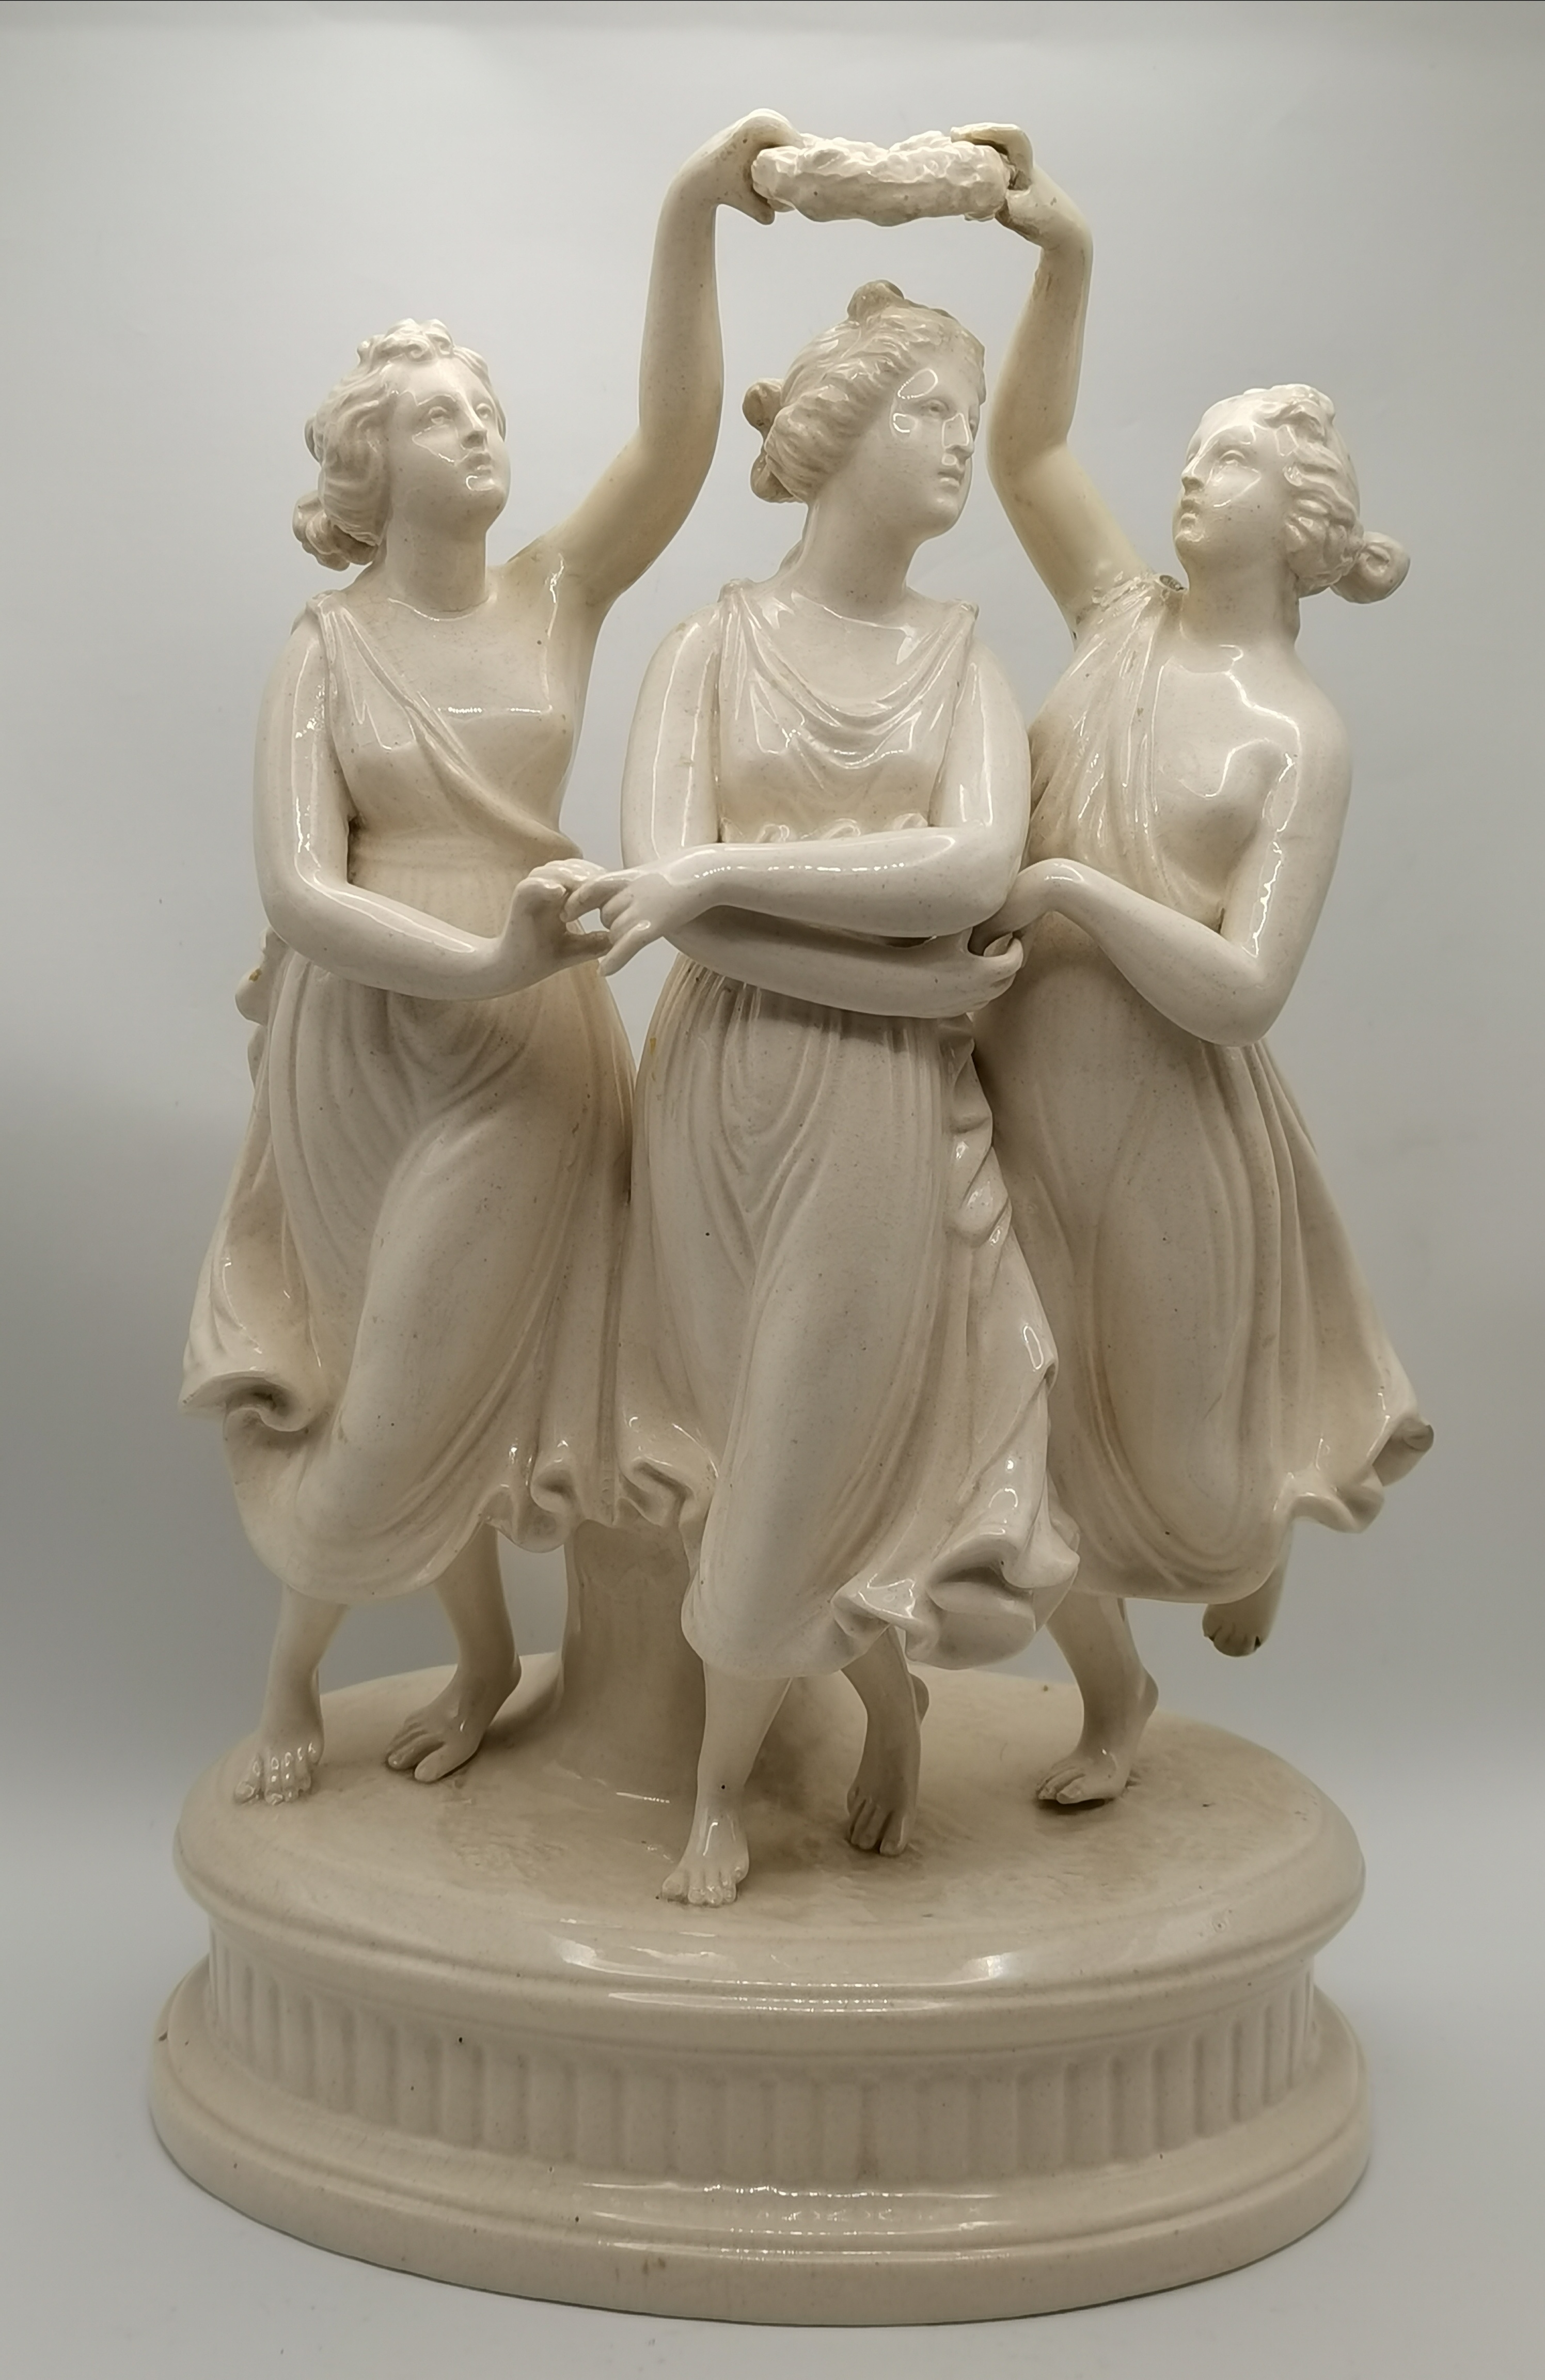 Antique Parian creamware figure of The Three Graces